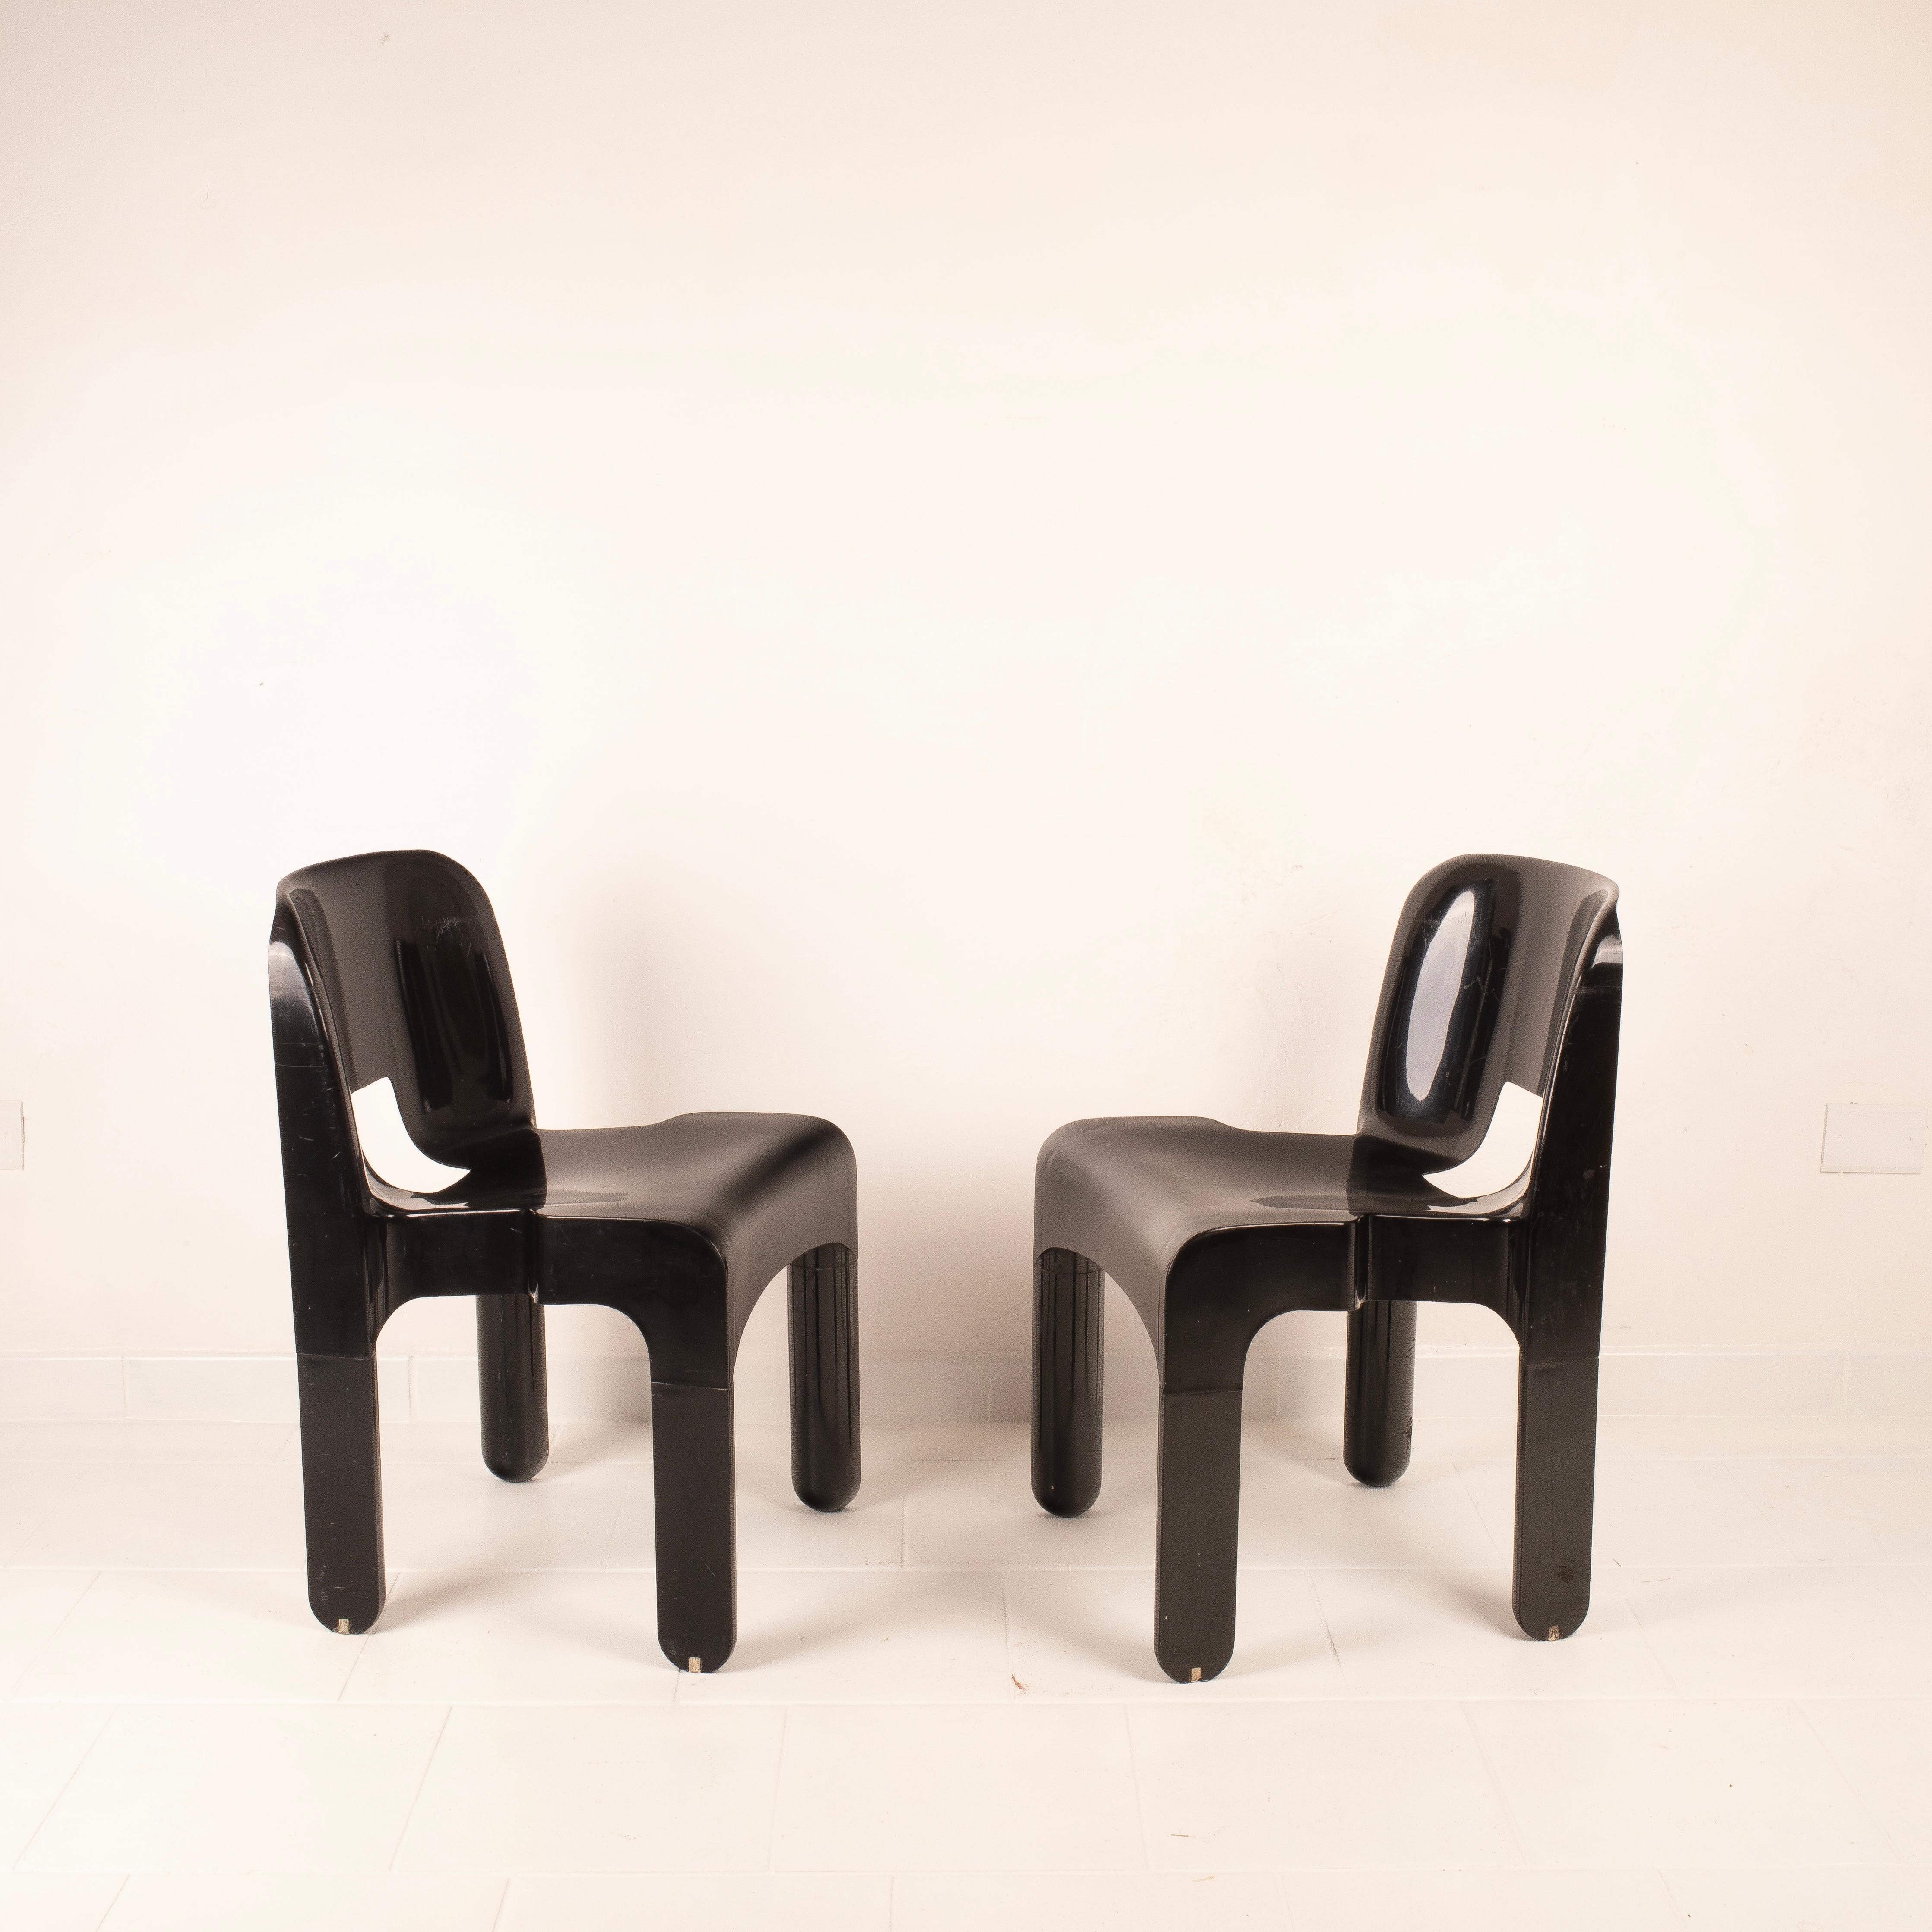 La chaise noire Universal de Joe Colombo, fabriquée par Kartell, est une création emblématique du design italien des années 1960.
Cette chaise se caractérise par un design minimaliste et élégant qui en a fait un objet culte dans le monde du design